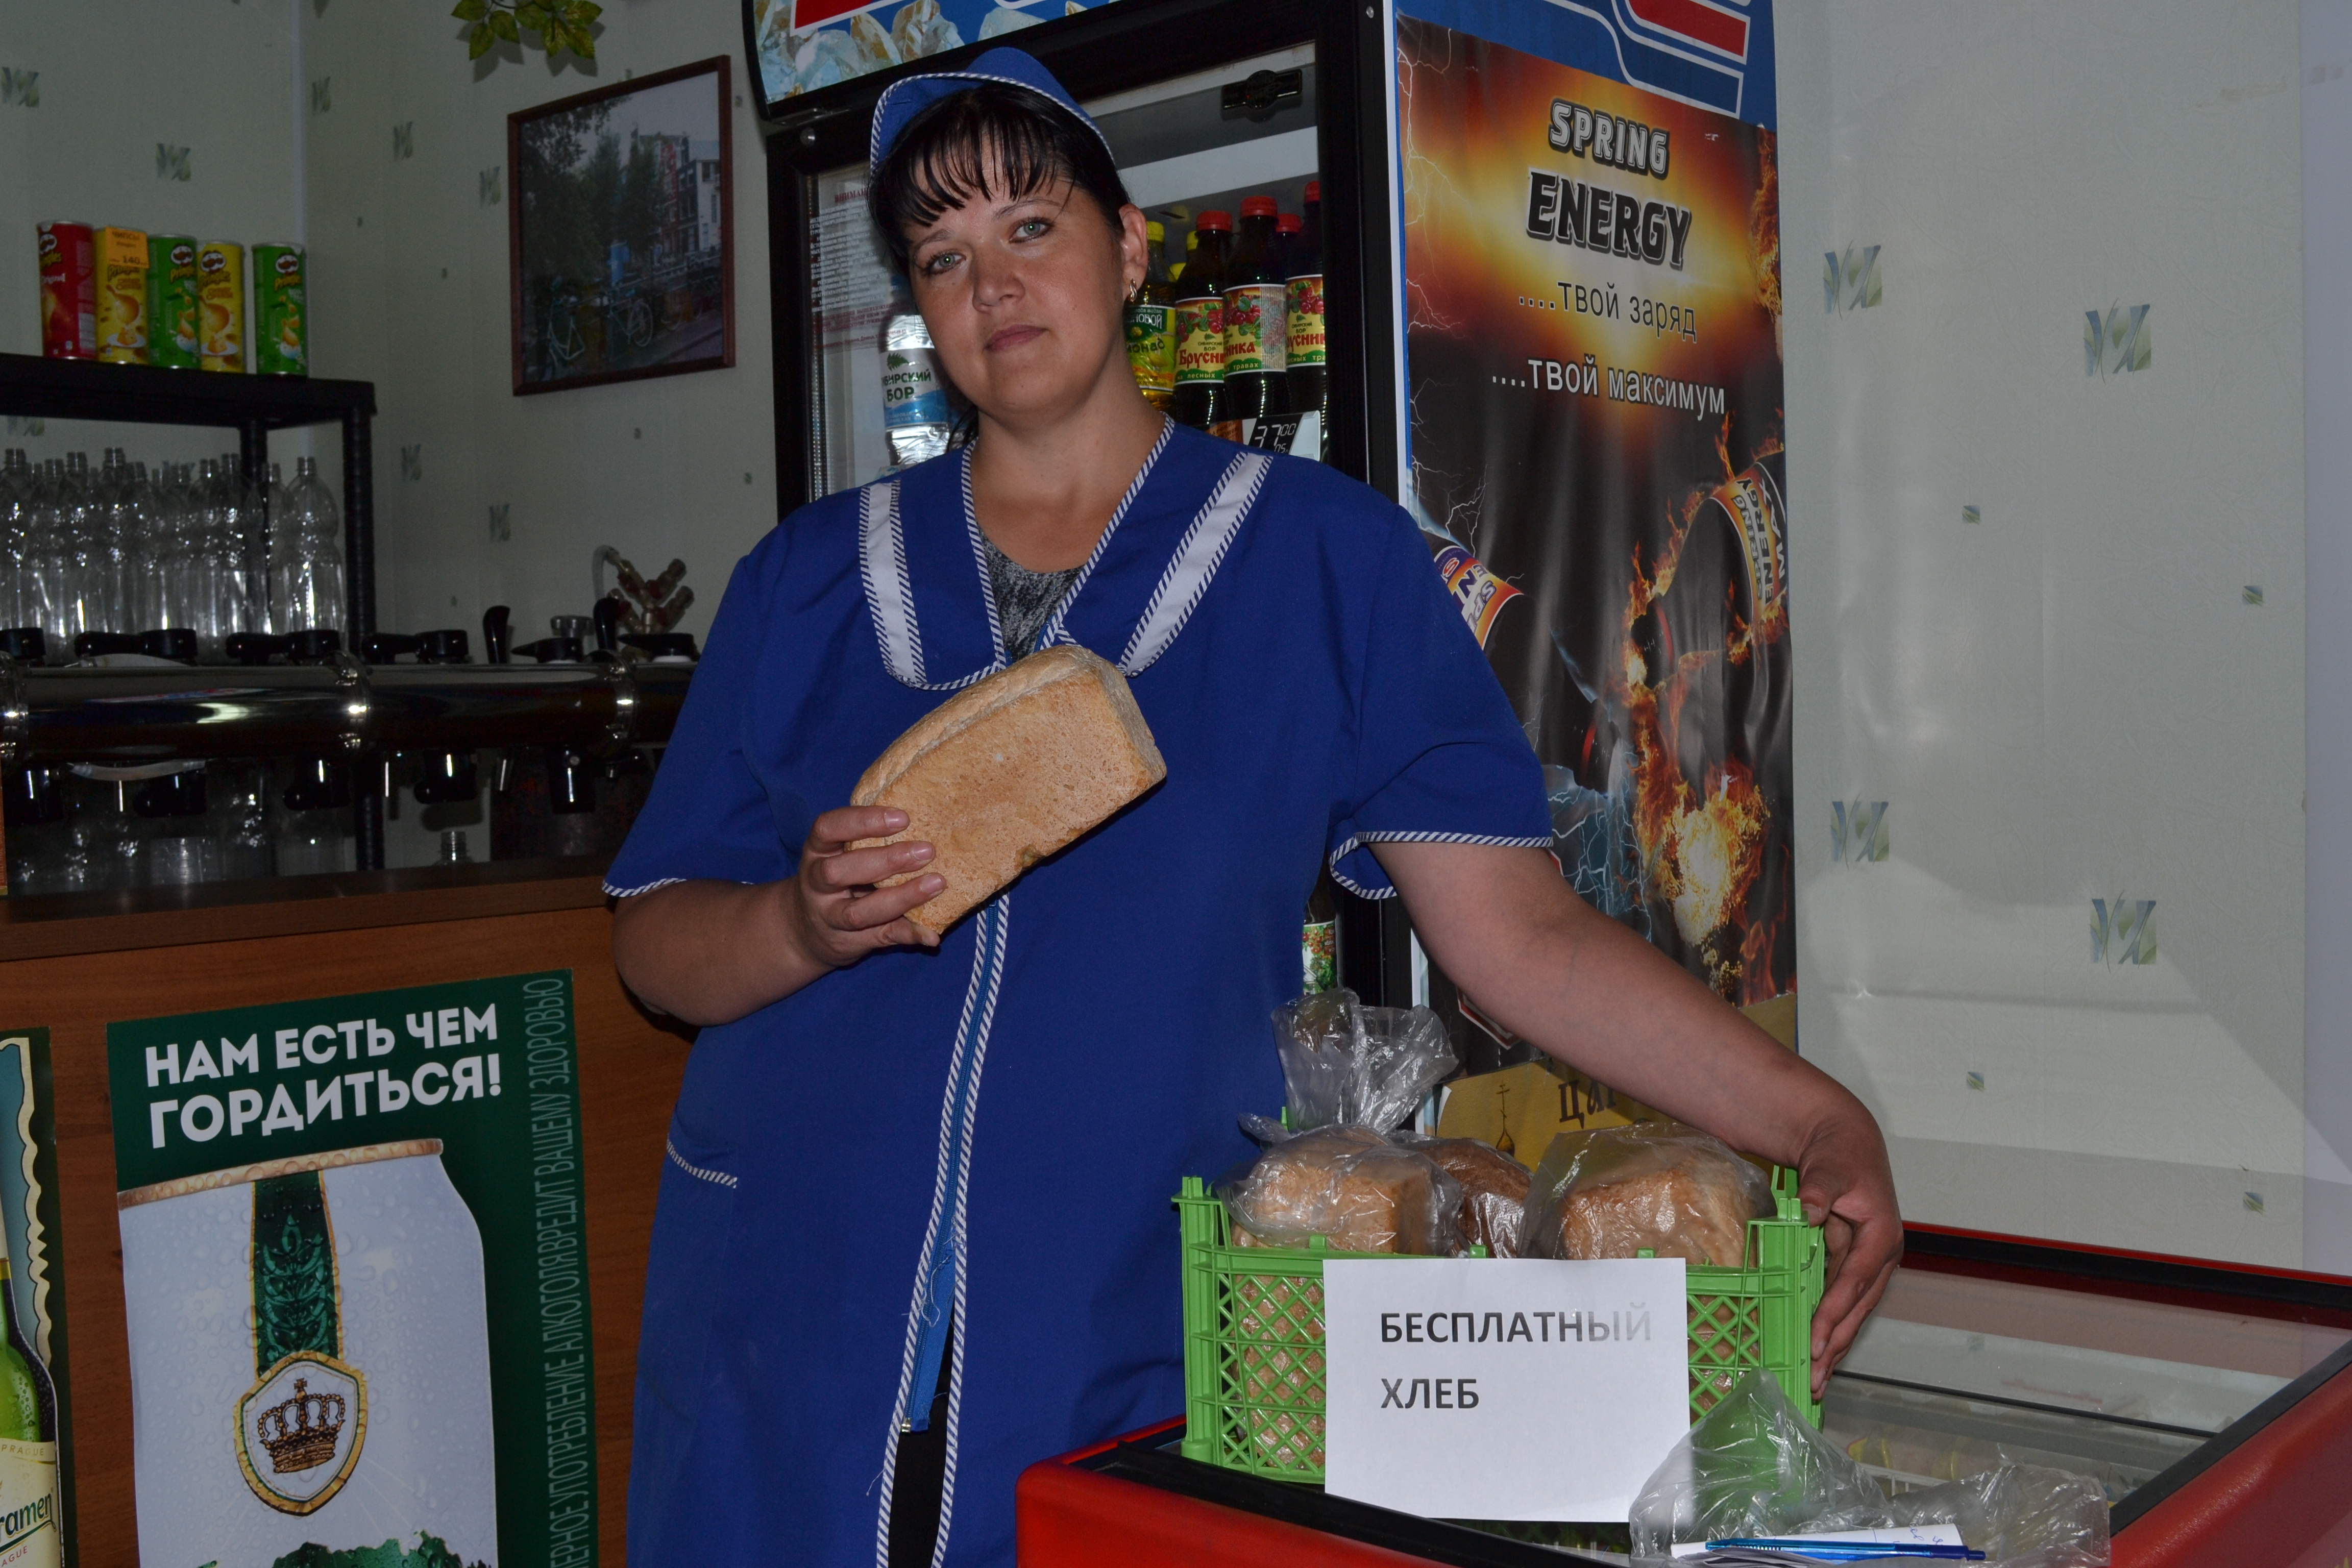 В Тюмени в магазинах раздают бесплатный хлеб - 20 июля 2016 года